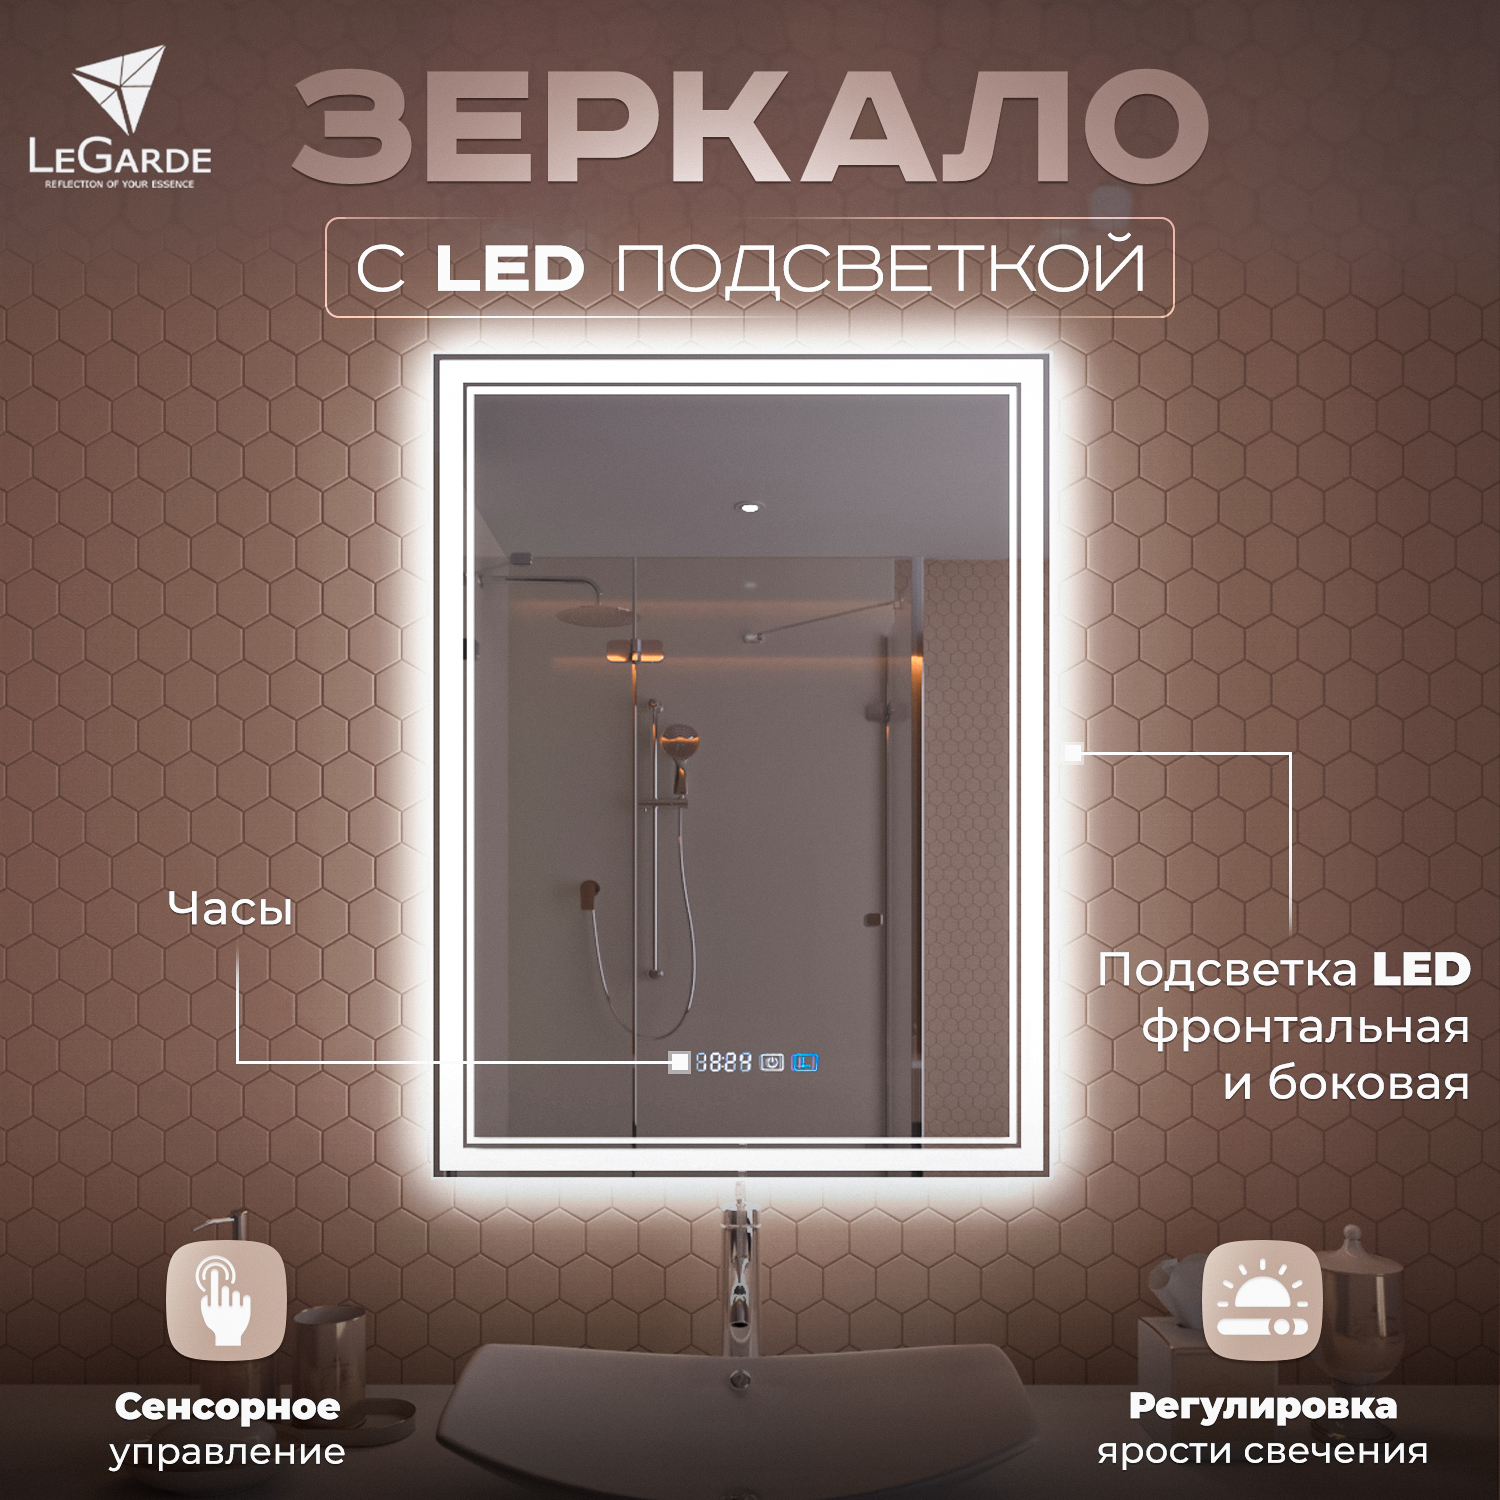 зеркало настенное с пескоструйной графикой с полочками 60x80 см Зеркало для ванной с подсветкой, LeGarde (Carry) c сенсором, часами и диммером 60x80 см